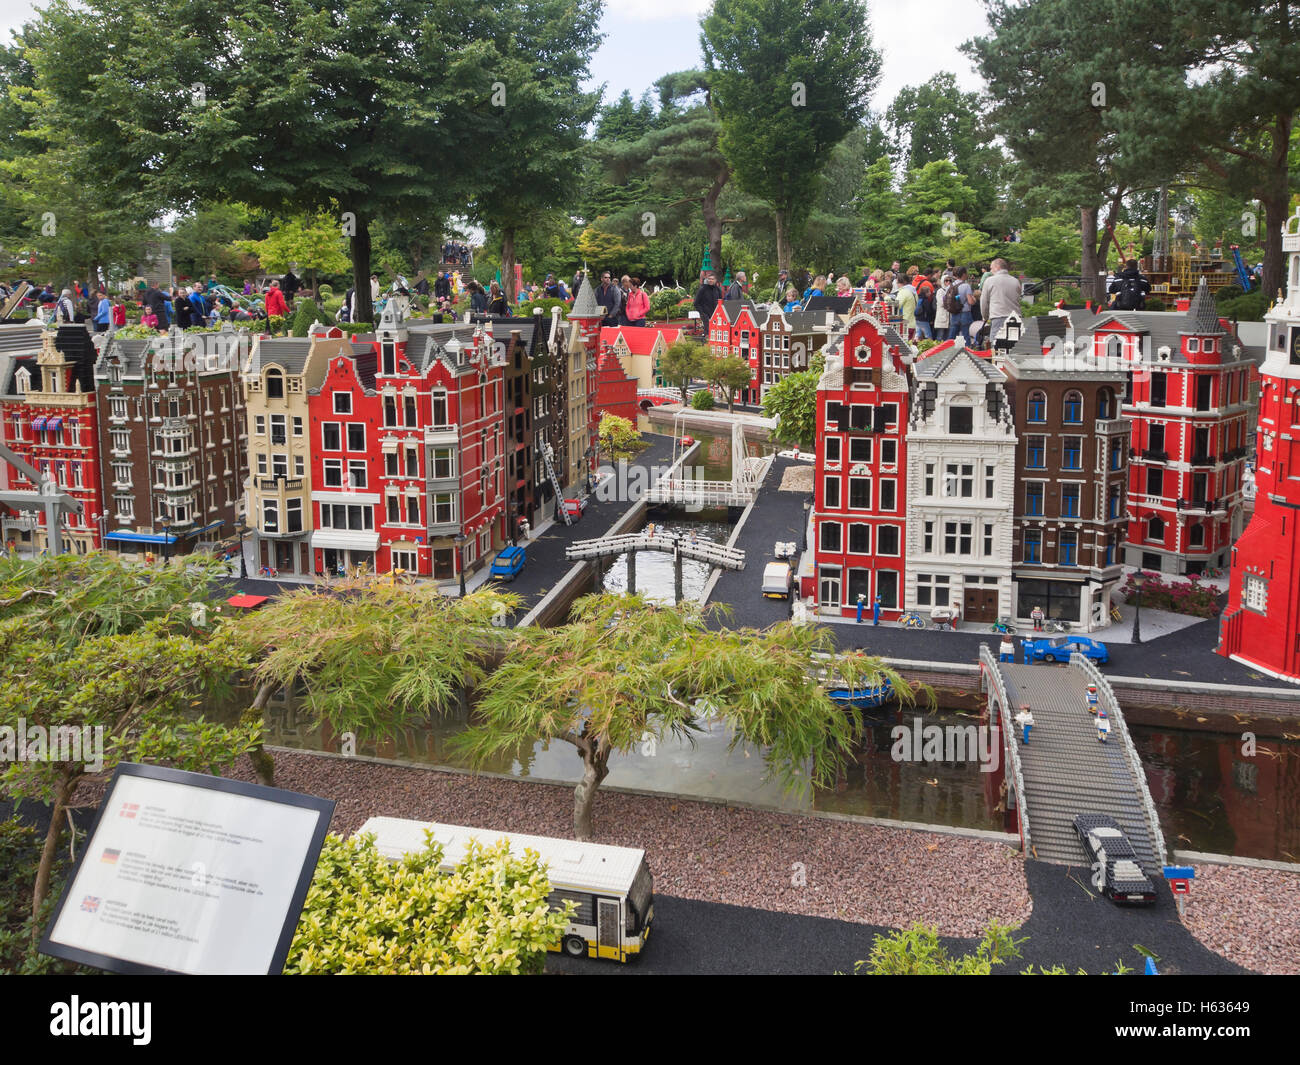 Amsterdam Holanda recreados en los ladrillos de Lego, Legoland Billund, Dinamarca Foto de stock